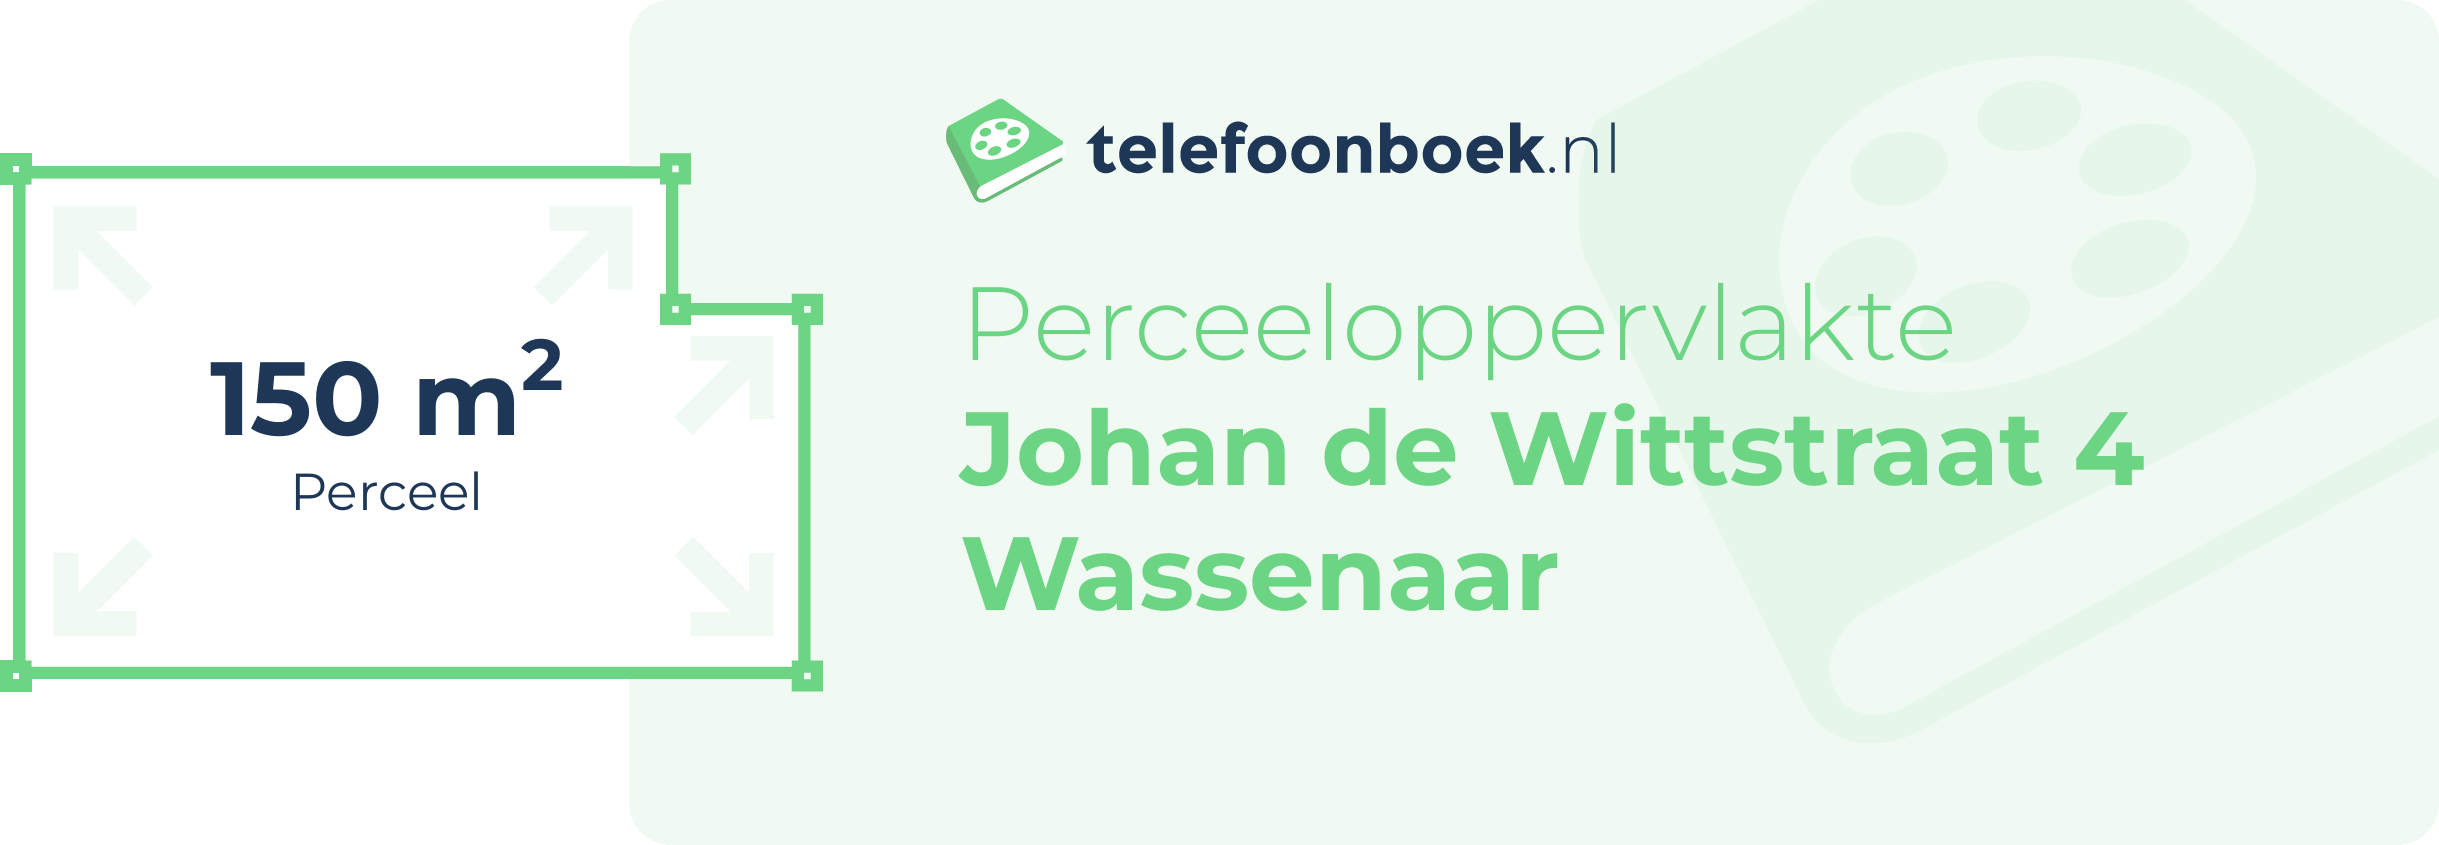 Perceeloppervlakte Johan De Wittstraat 4 Wassenaar